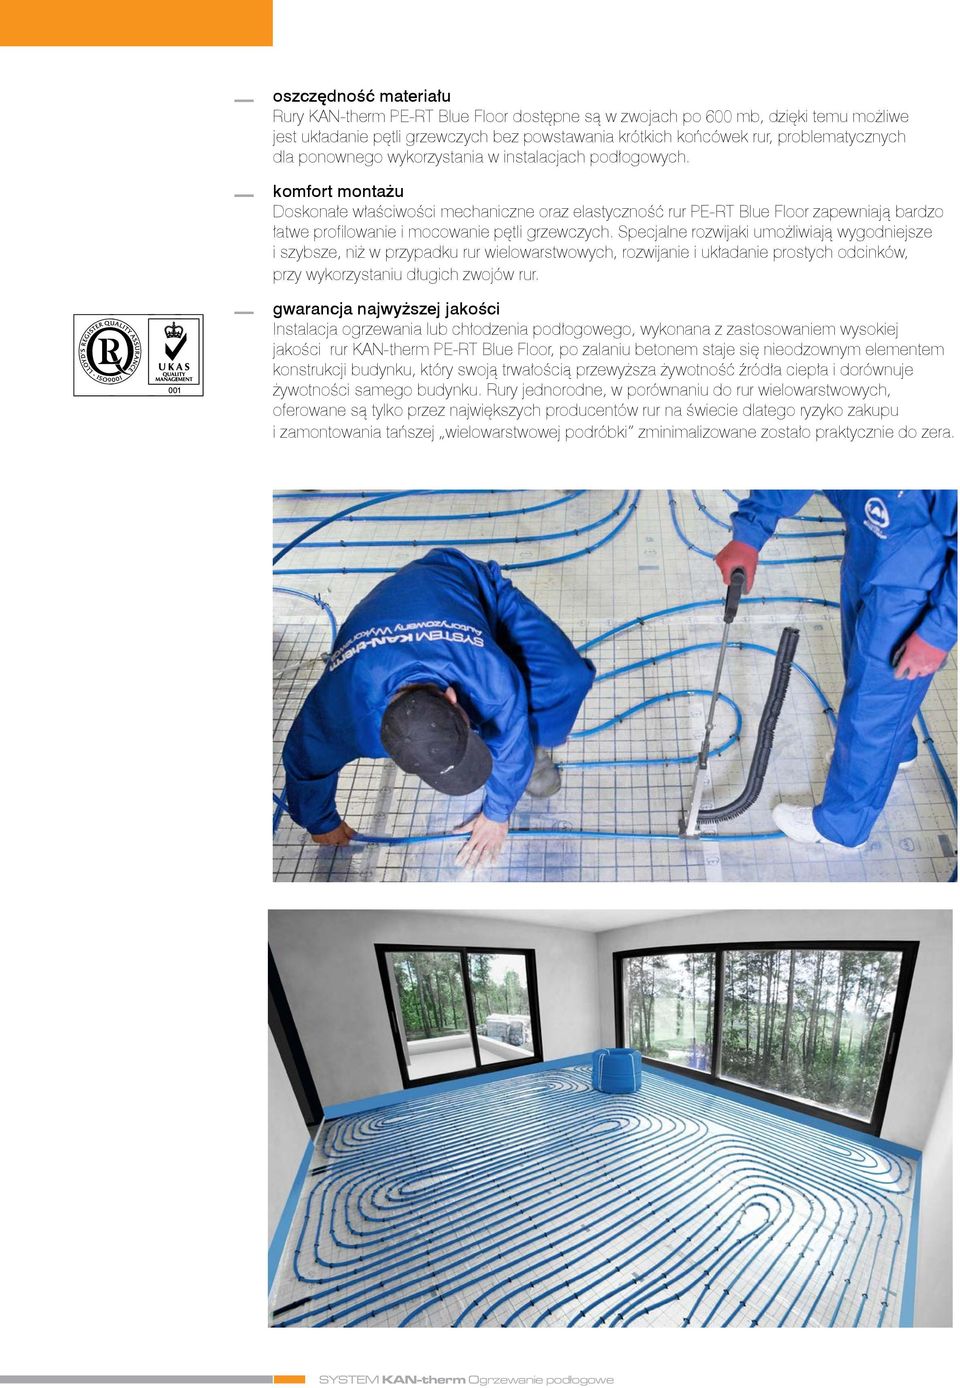 komfort montażu Doskonałe właściwości mechaniczne oraz elastyczność rur PE-RT Blue Floor zapewniają bardzo łatwe profilowanie i mocowanie pętli grzewczych.